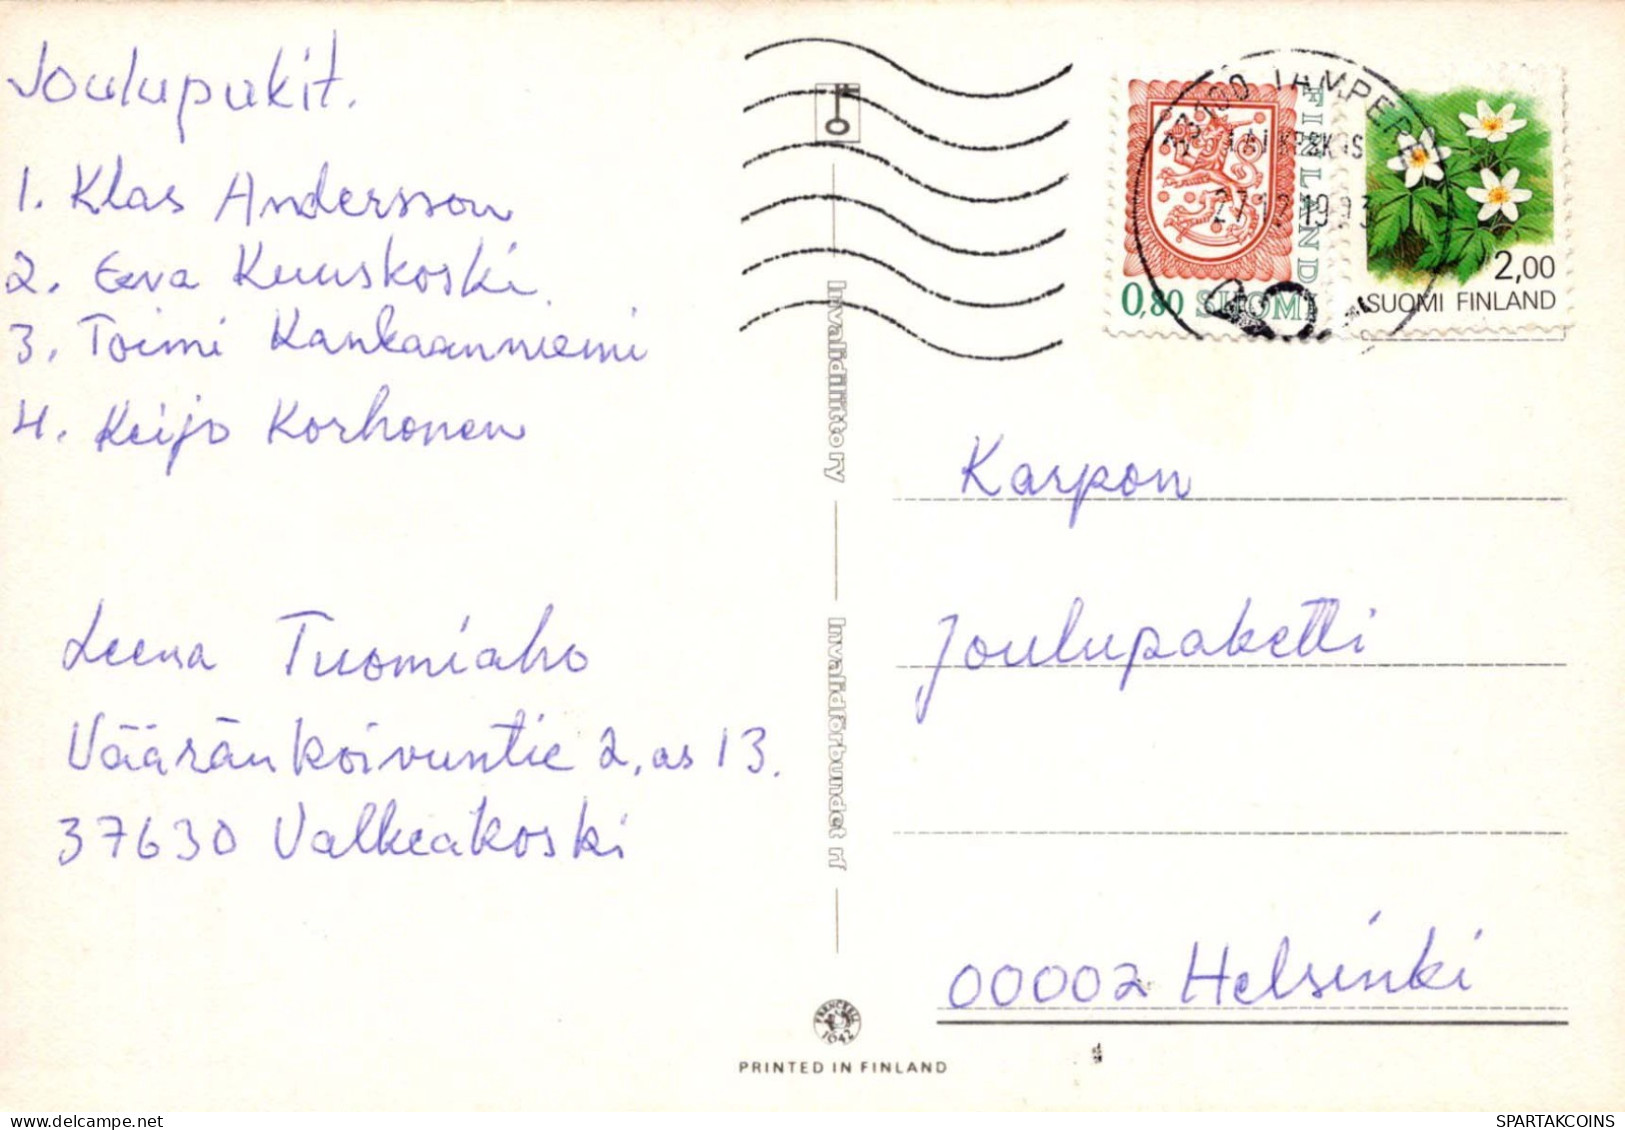 EASTER CHICKEN EGG Vintage Postcard CPSM #PBO632.GB - Easter